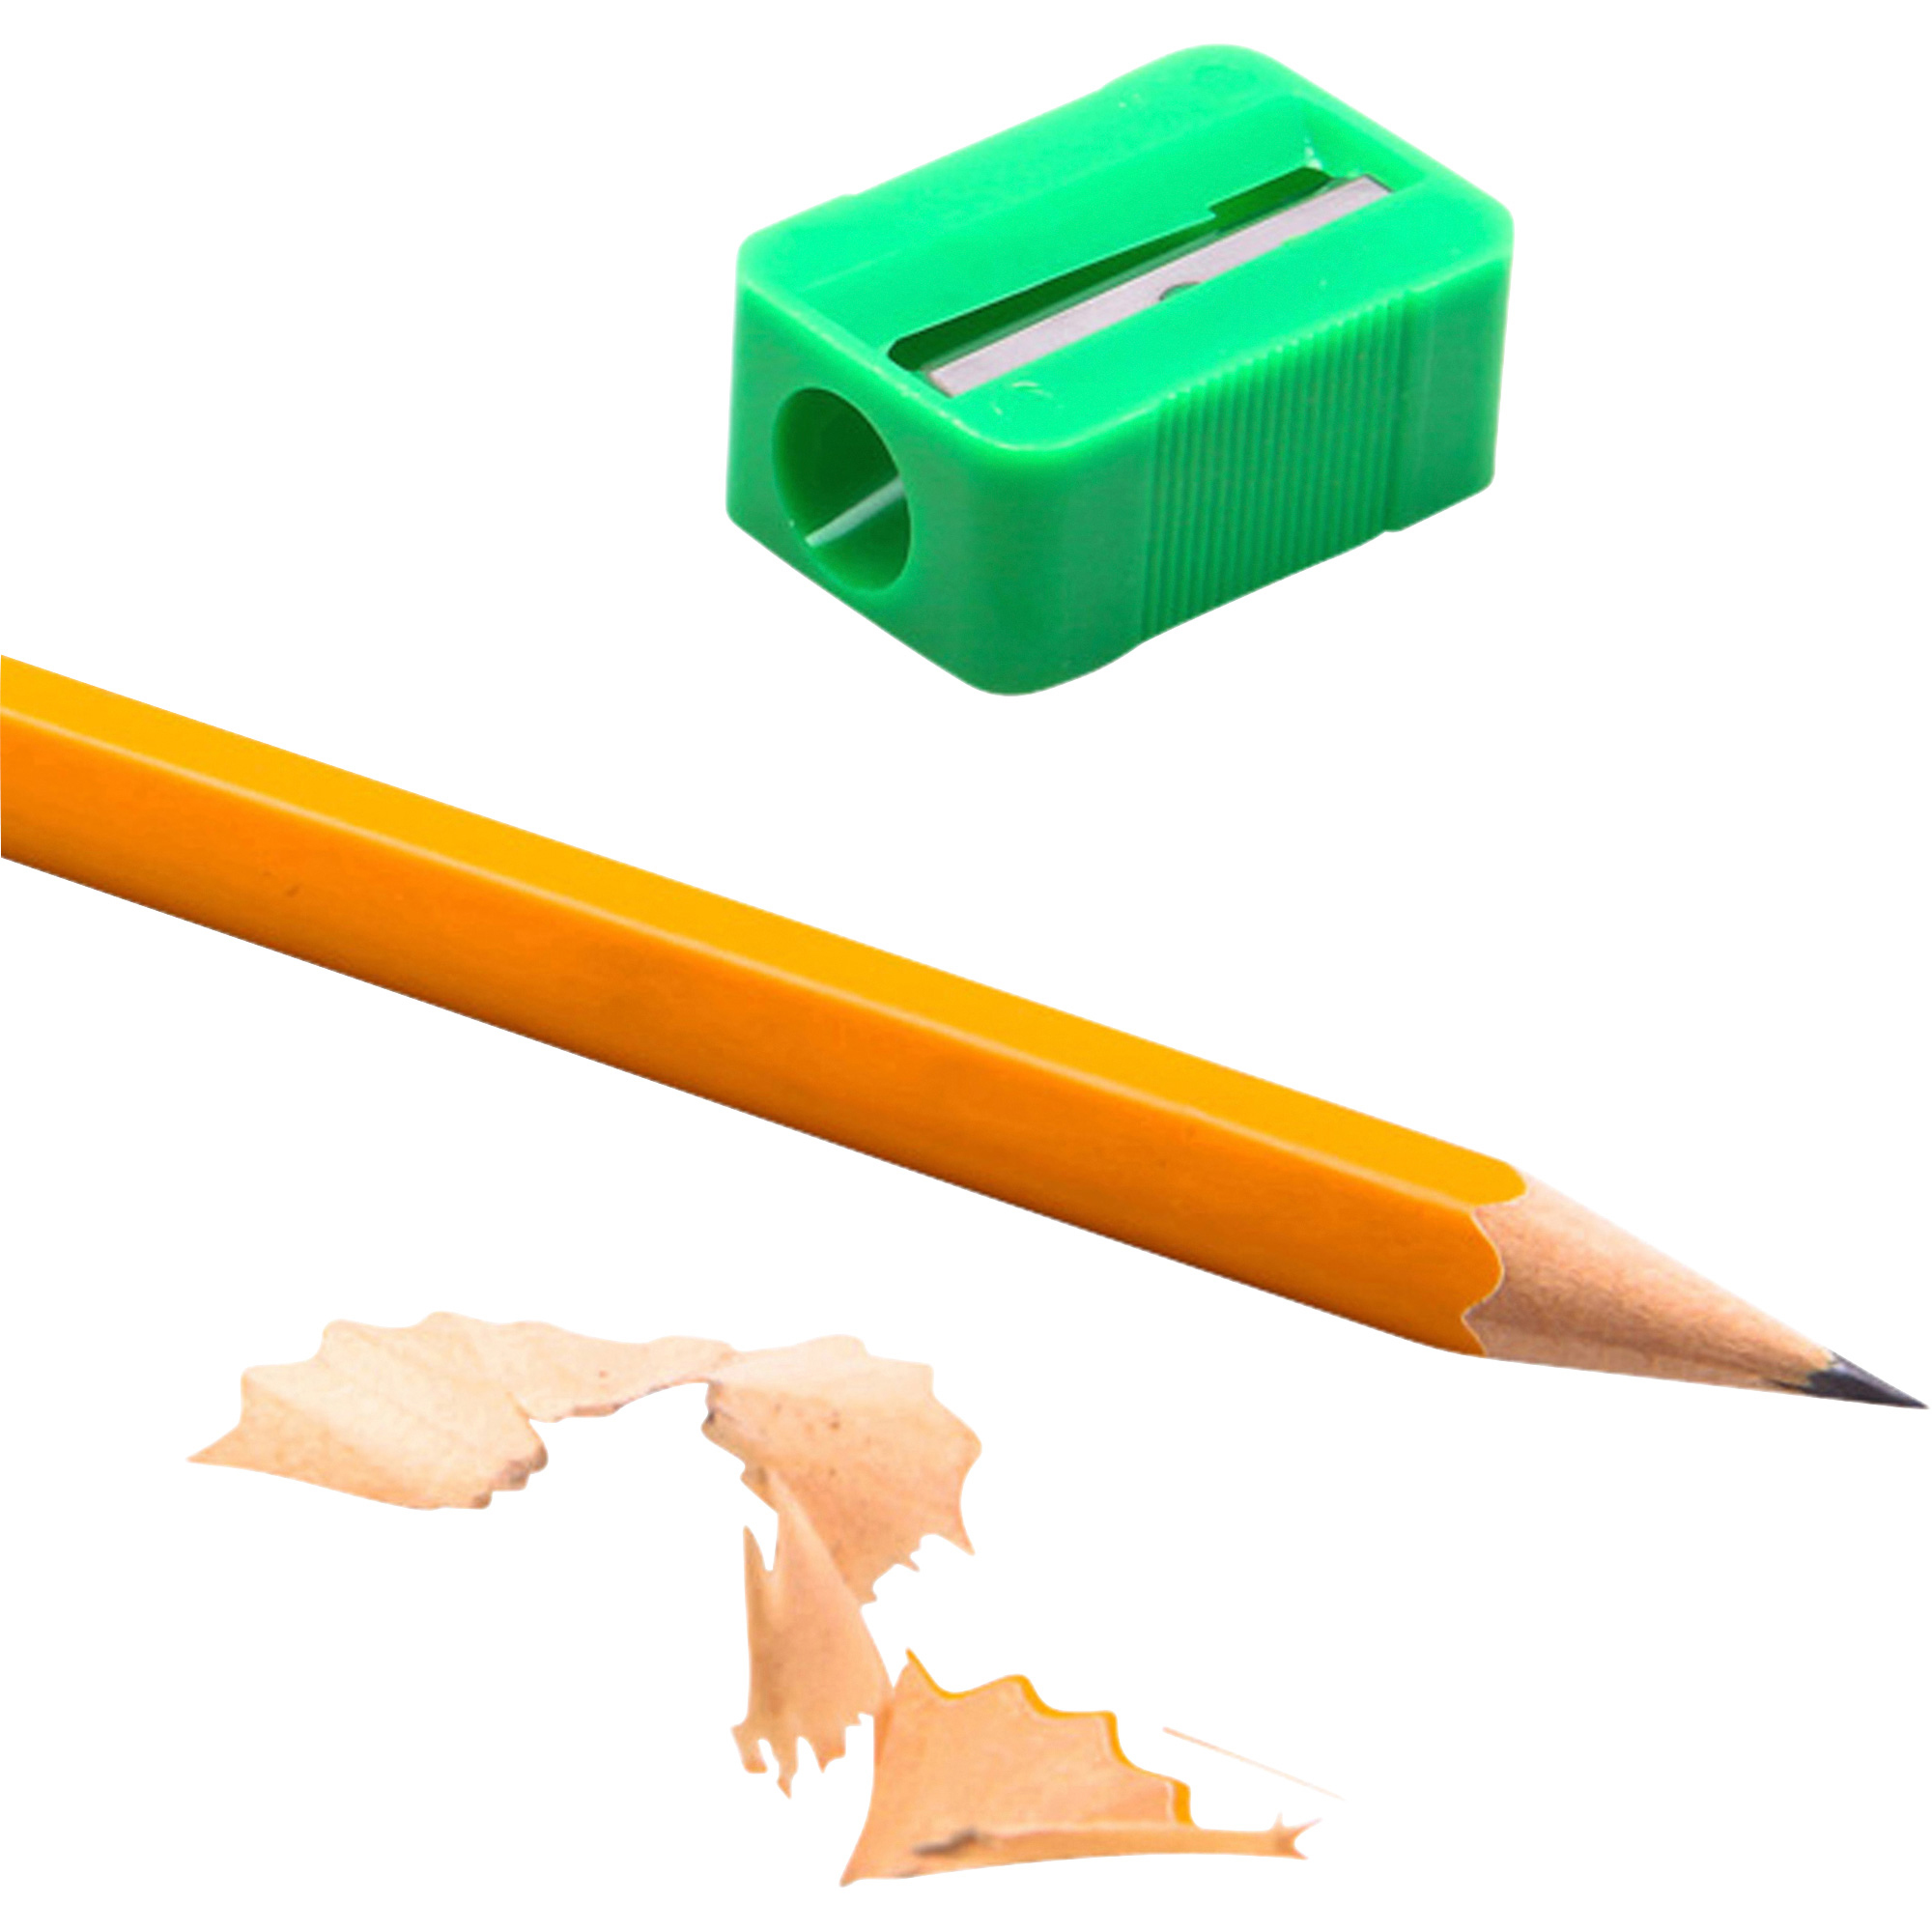 BAUMGARTENS Pencil Erasers